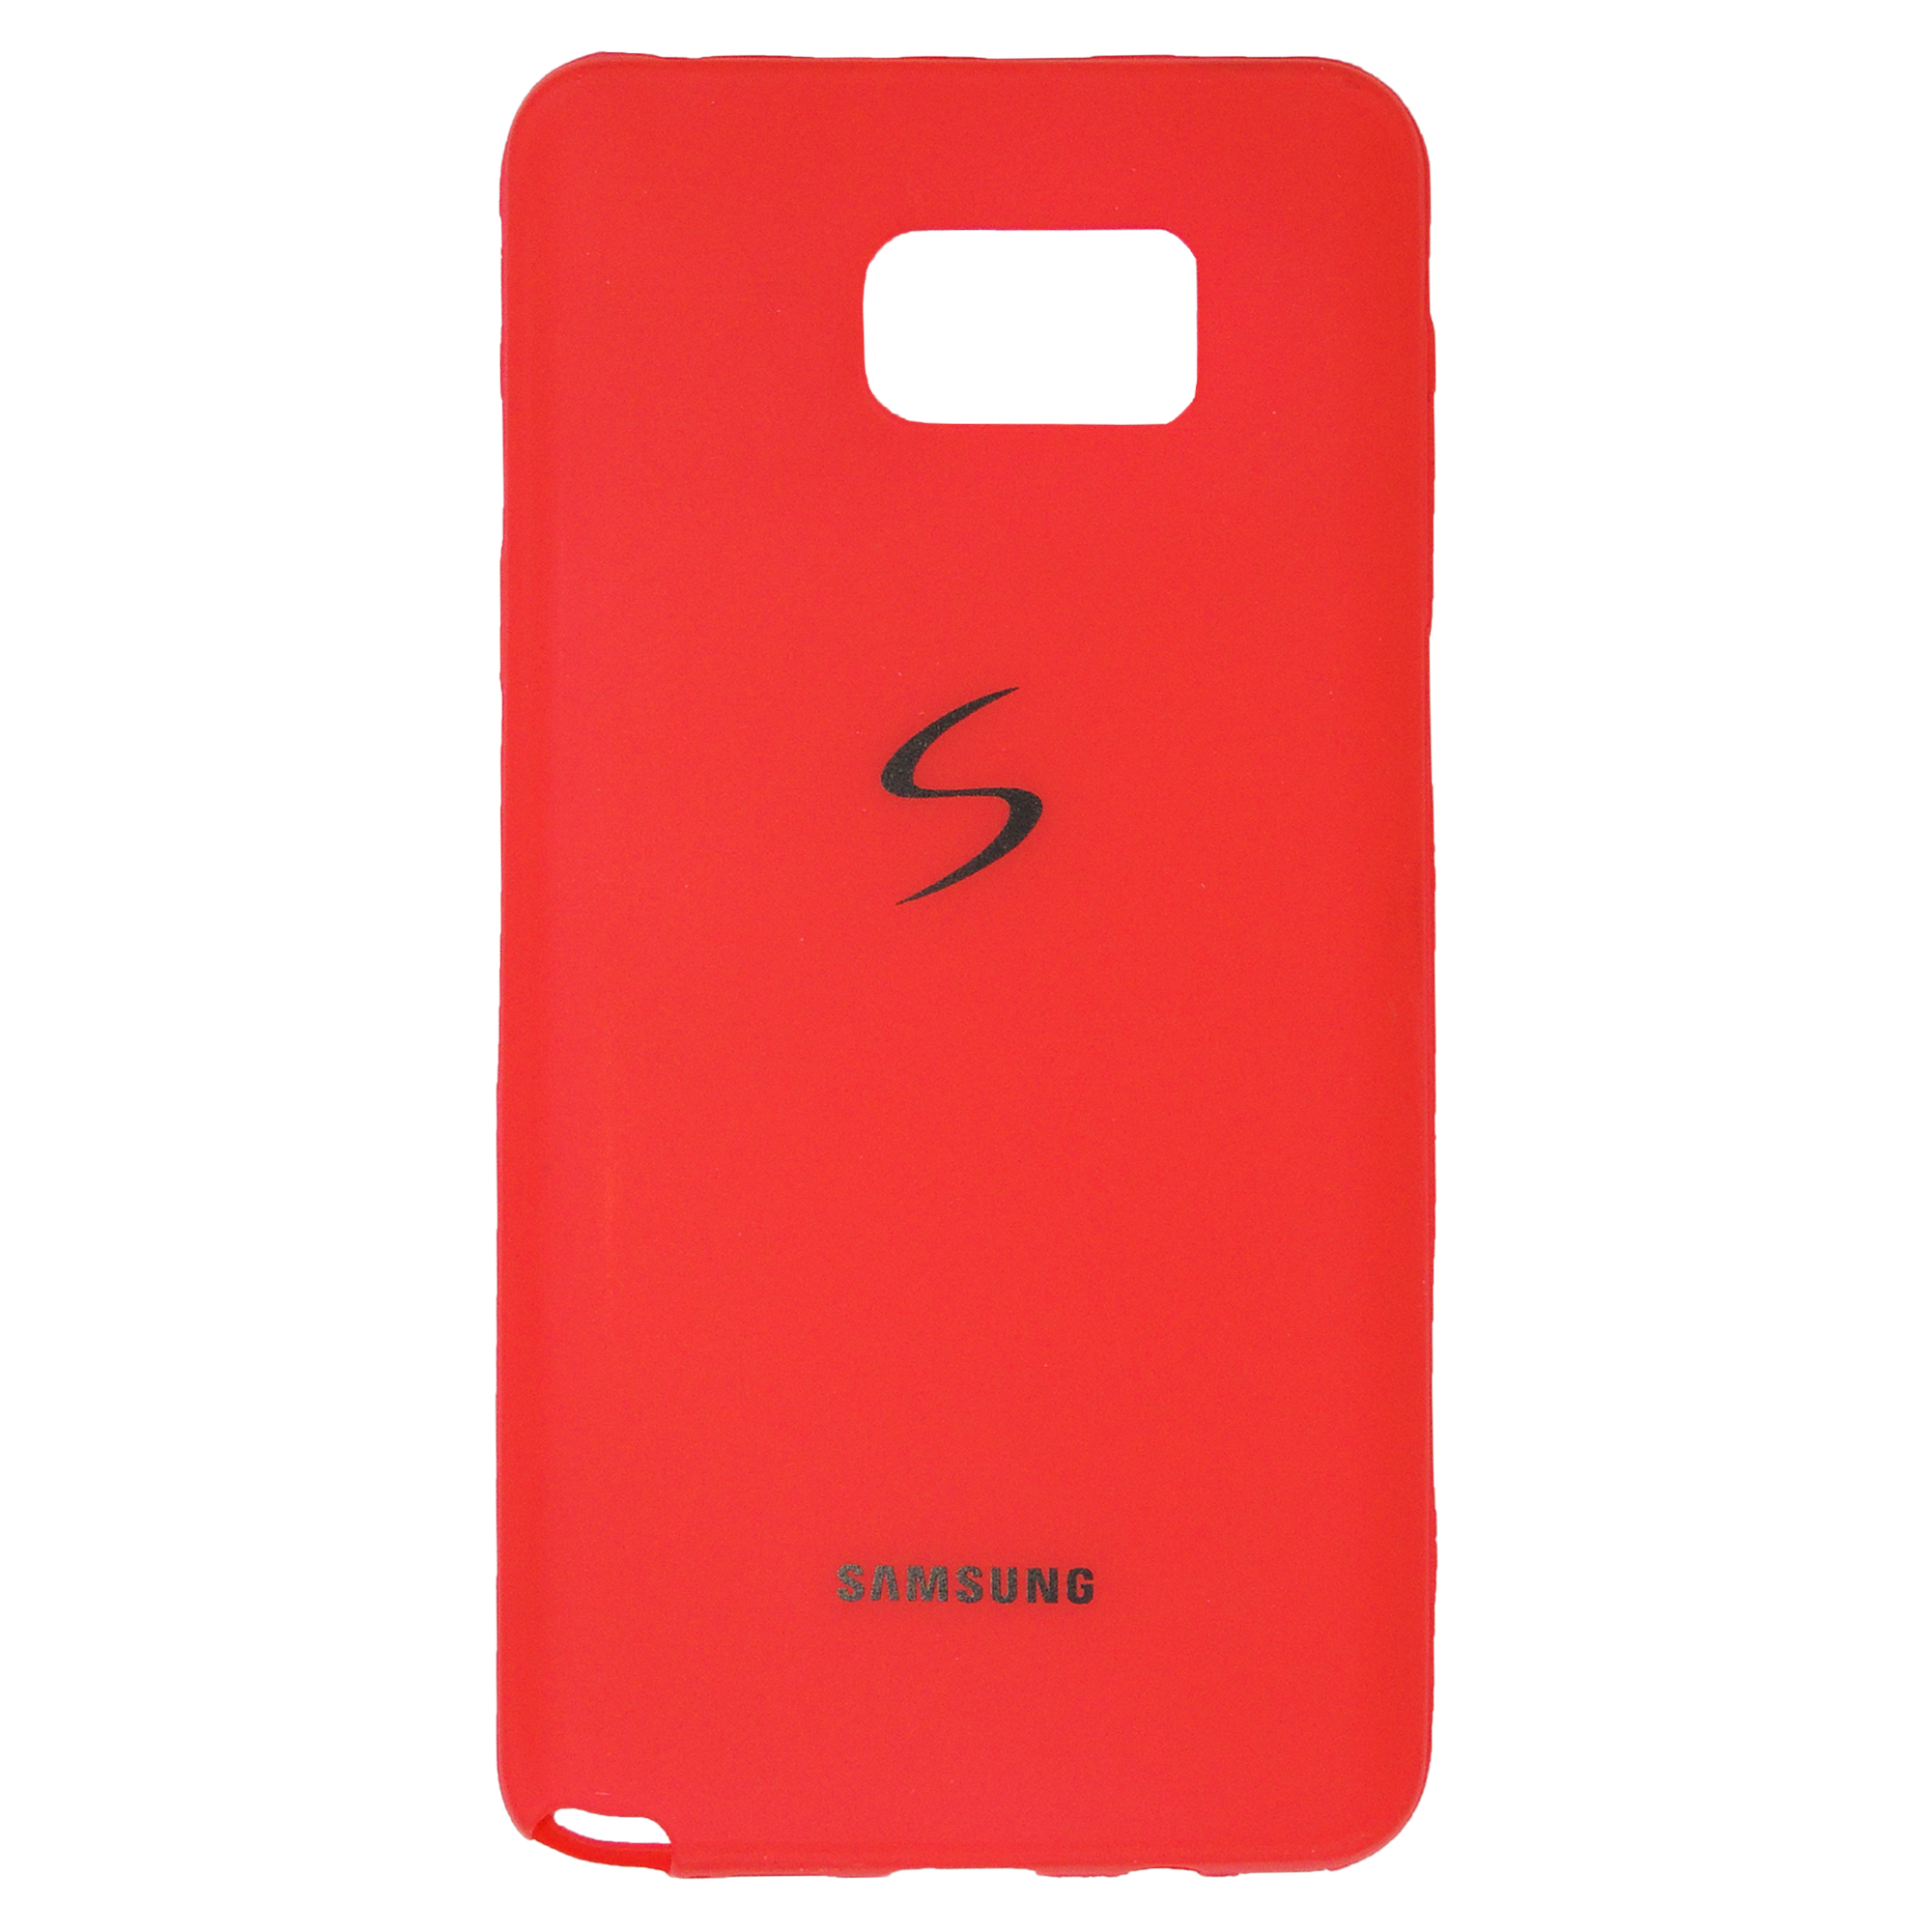 کاور مدل BK کد 05 مناسب برای گوشی موبایل سامسونگ Galaxy Note 5